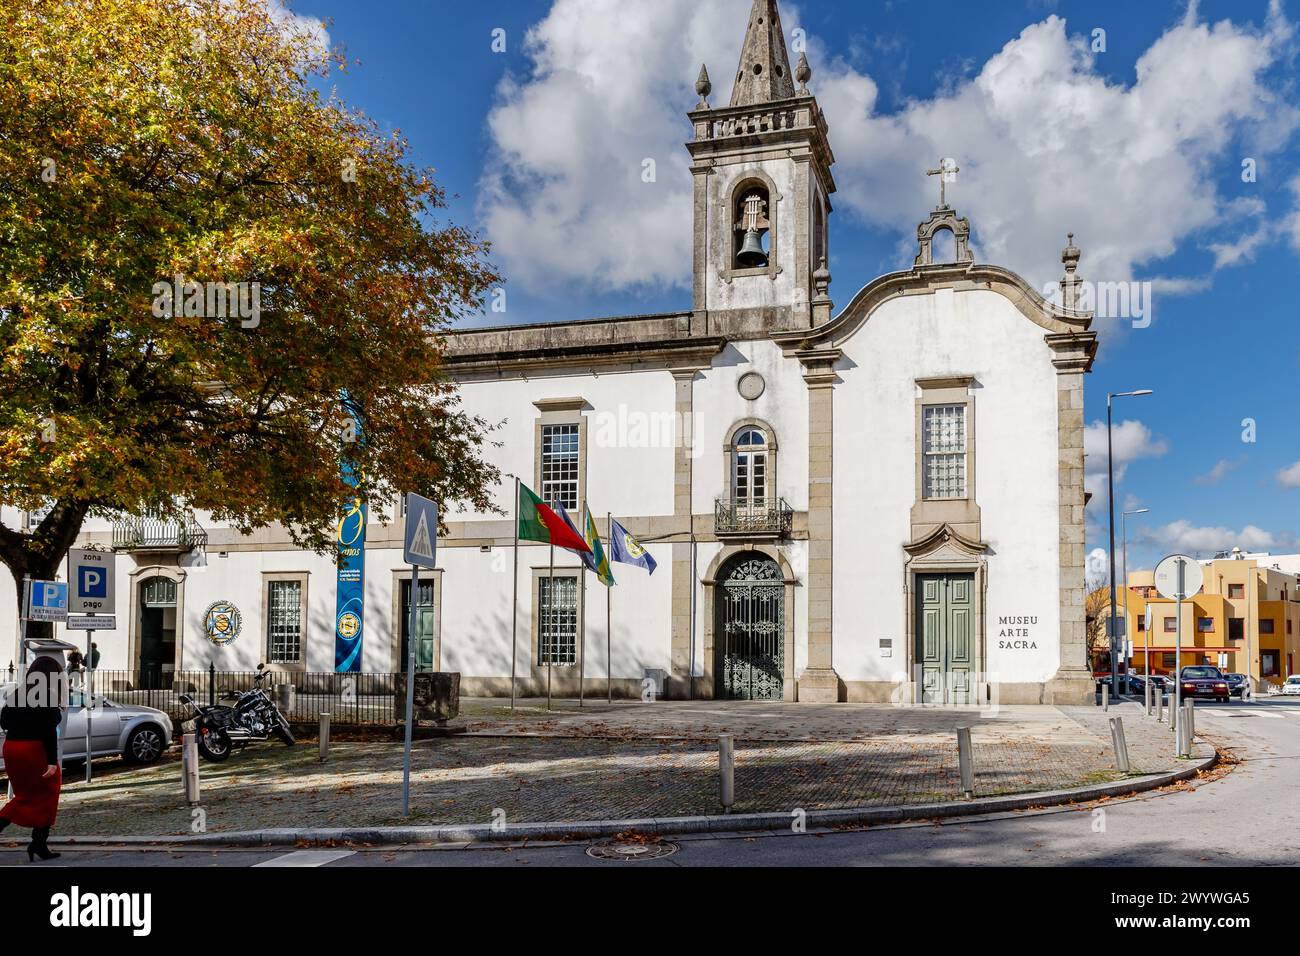 Vila Nova de Famalicao, Braga, Portugal - 22 octobre 2020 : détail de l'architecture du Musée d'Art Sacré (museu Arte sacra) dans la ville historique ce Banque D'Images